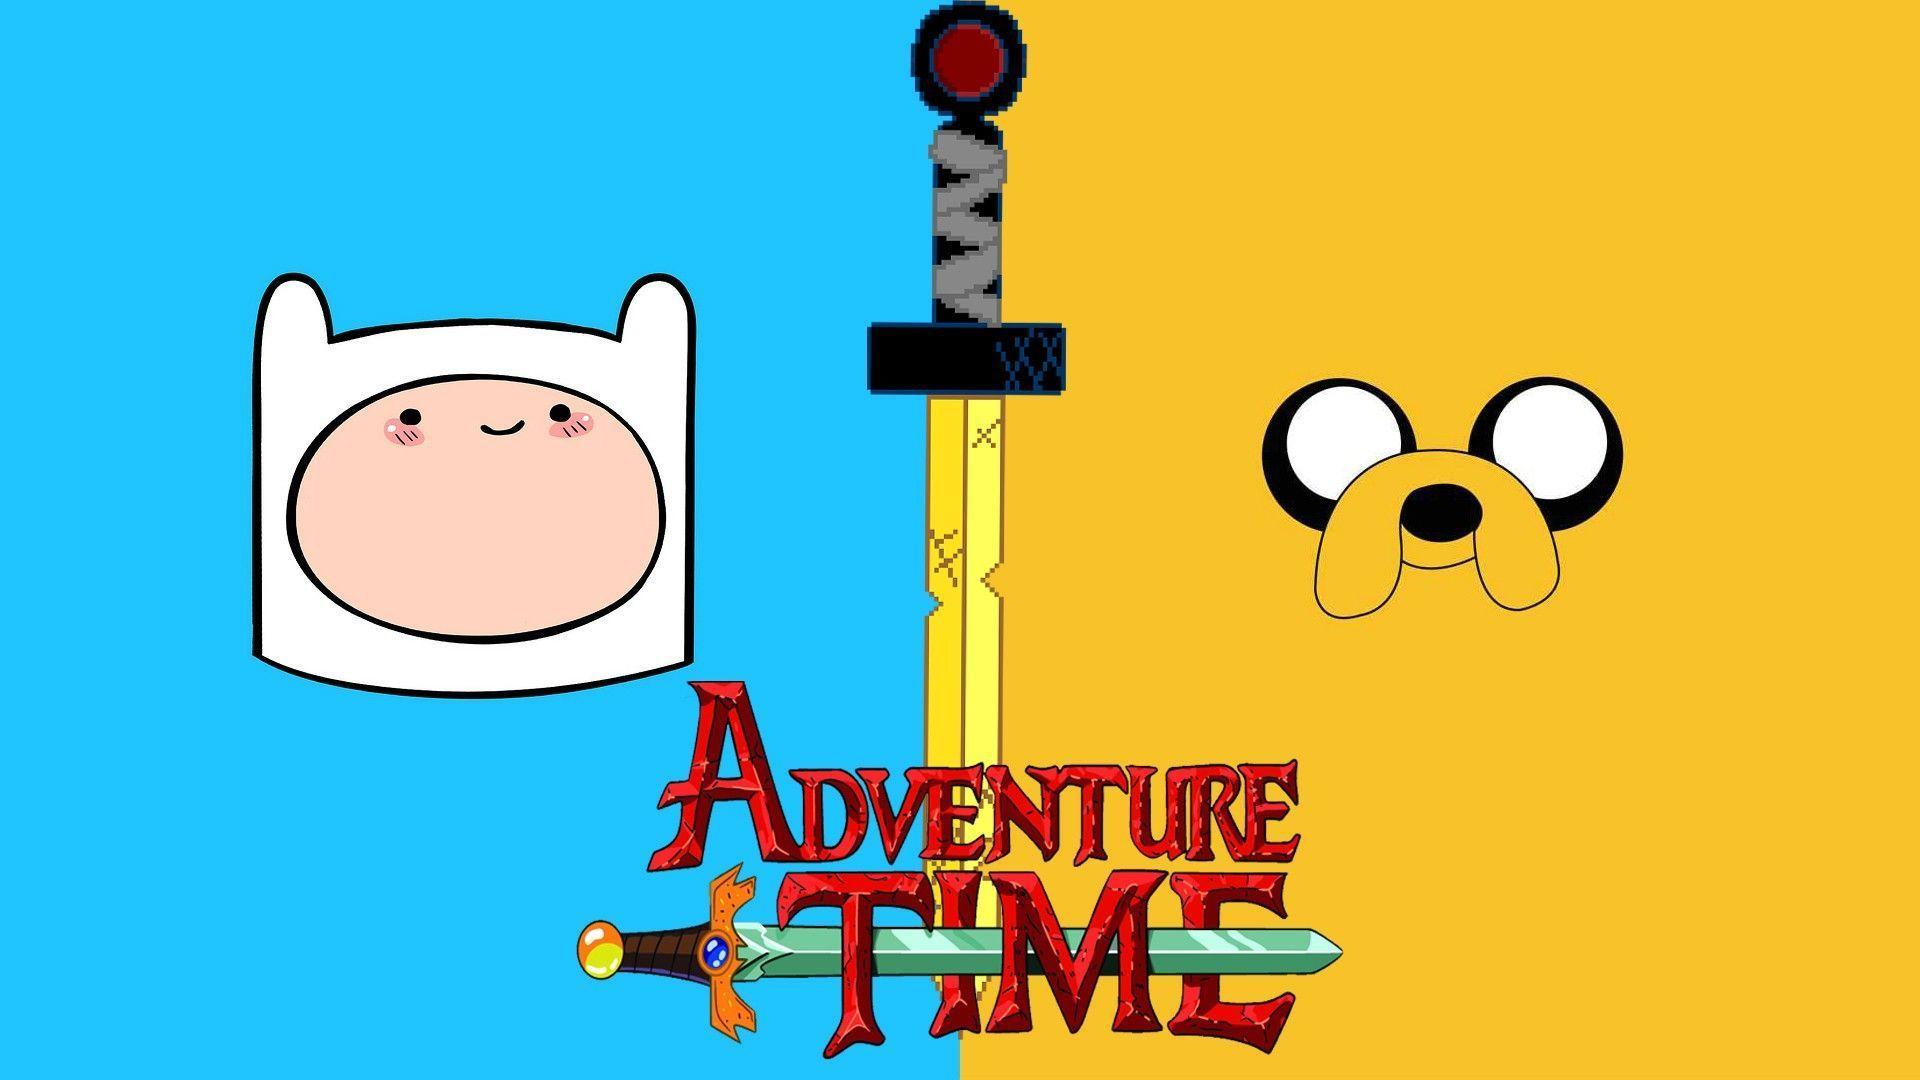 Adventure Time Wallpaper 1080p. Hdwidescreens